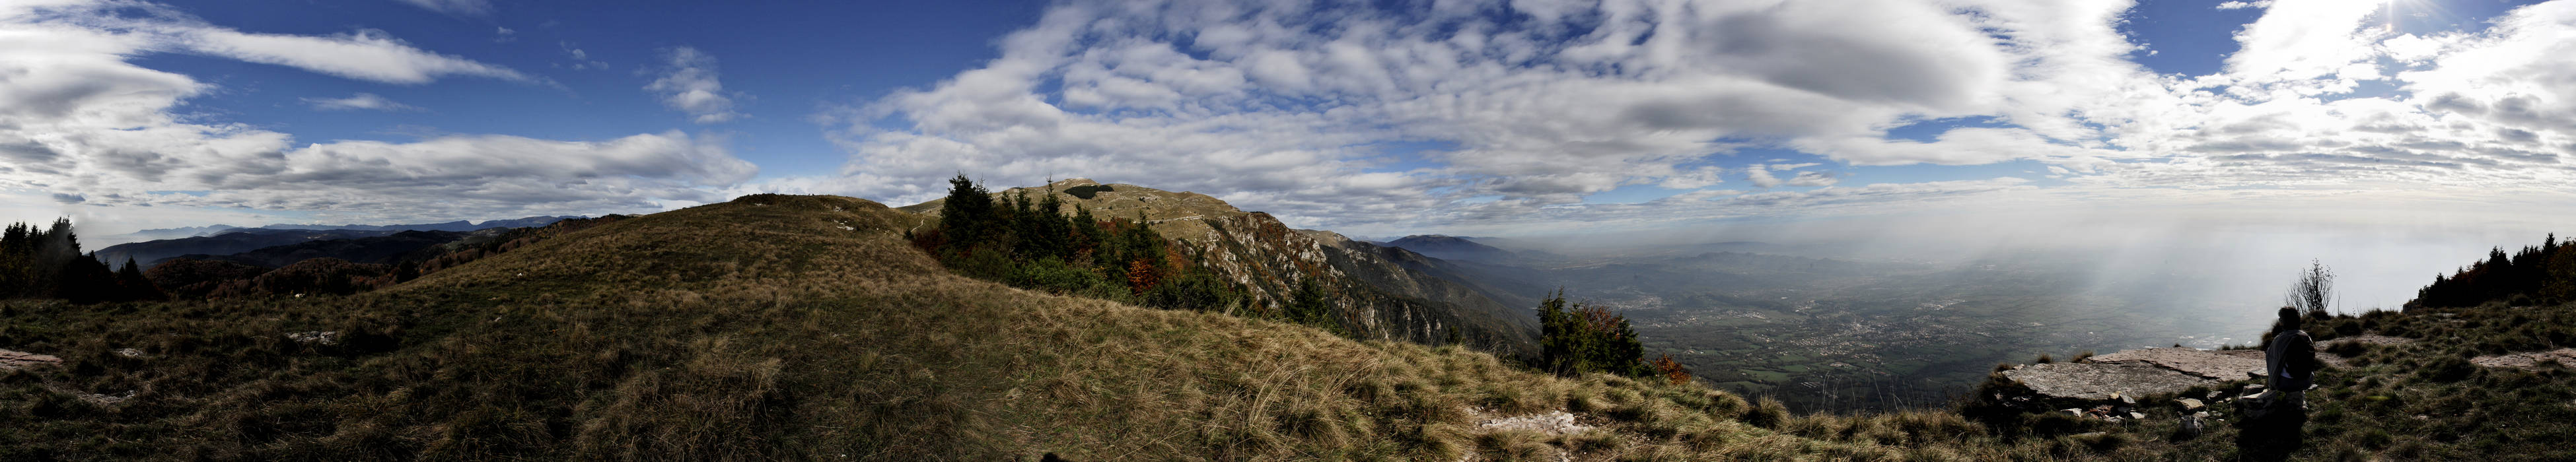 Monte Grappa, cima Grappa e pianura veneta - foto panoramica